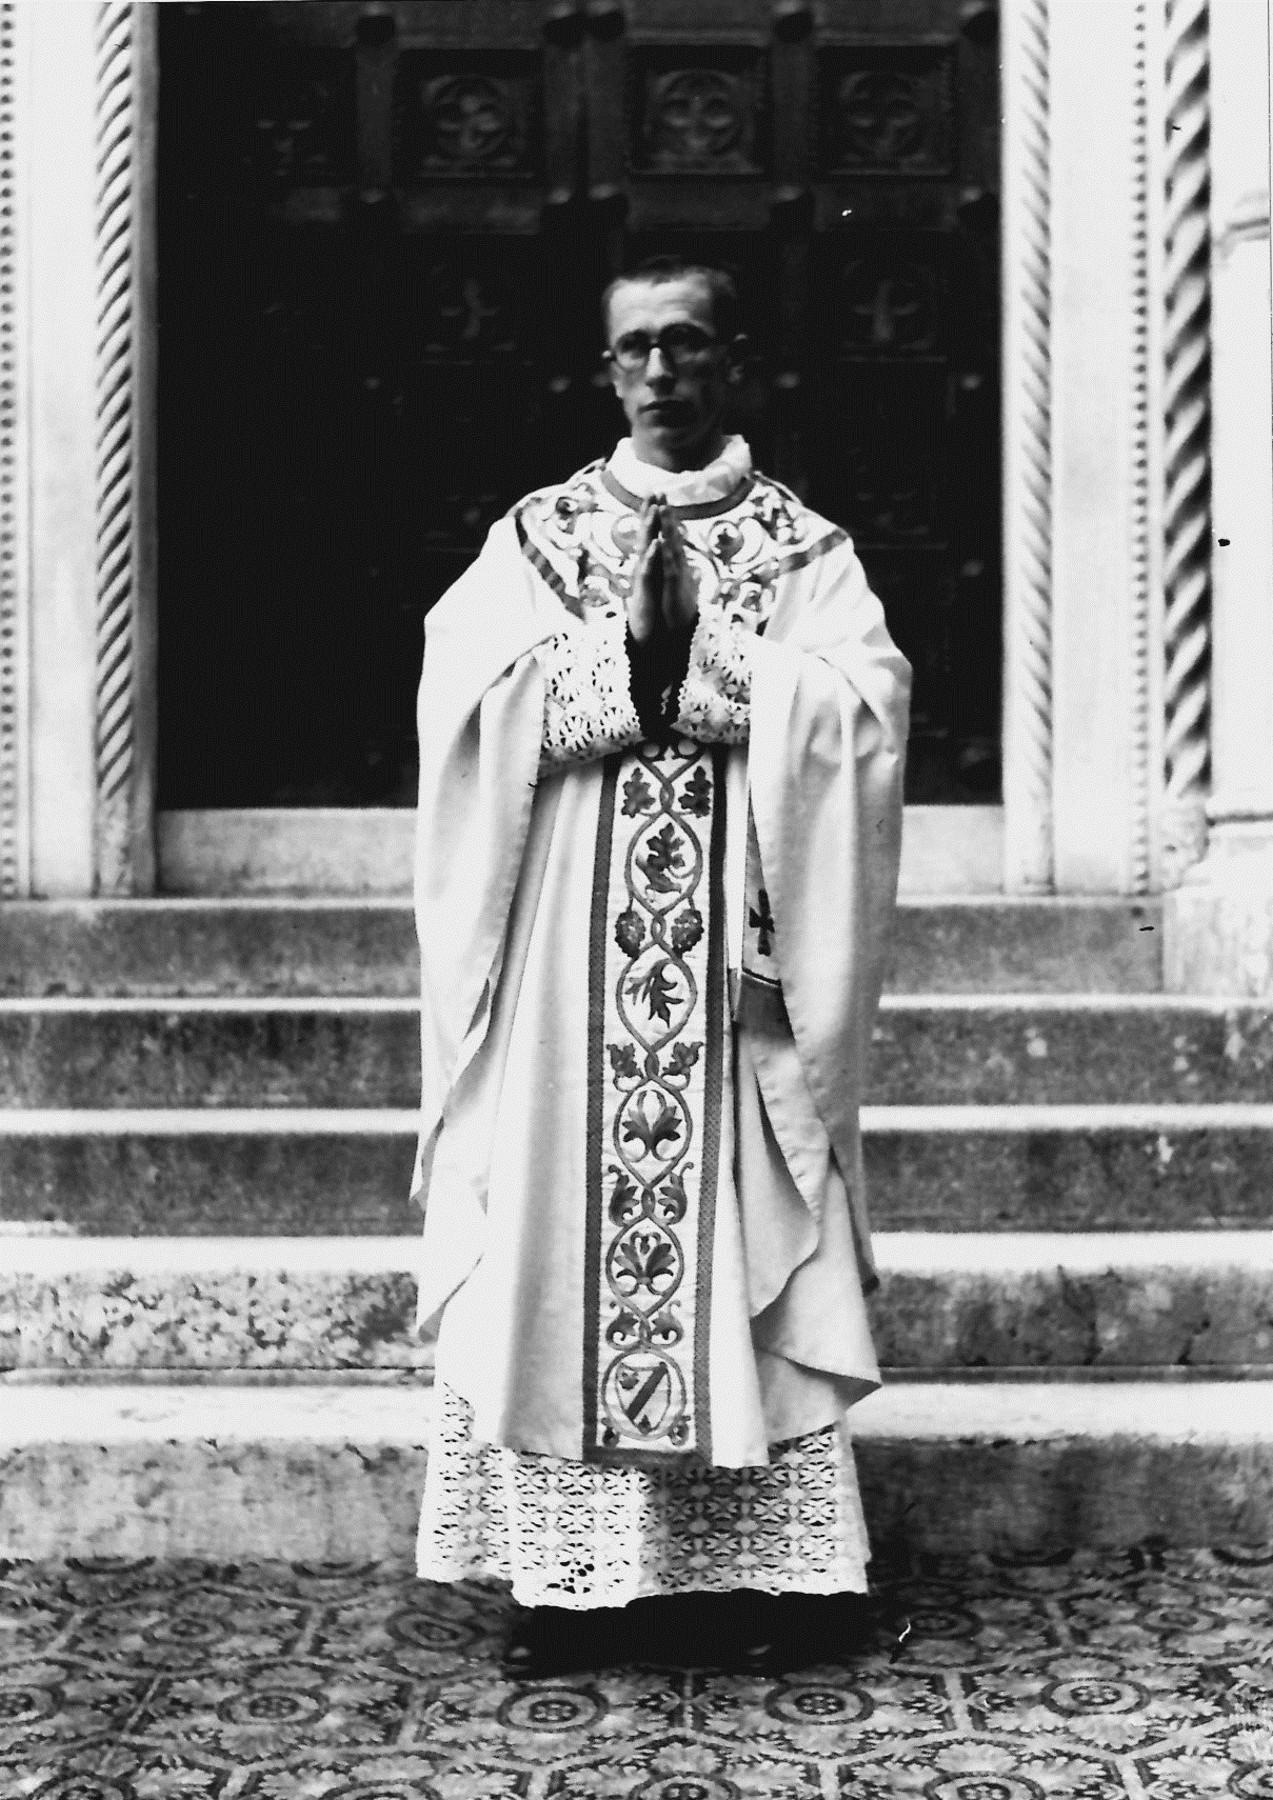 Basilica di Monte Berico (VI), fra David M. Turoldo il giorno della sua ordinazione presbiterale (18.8.1940)